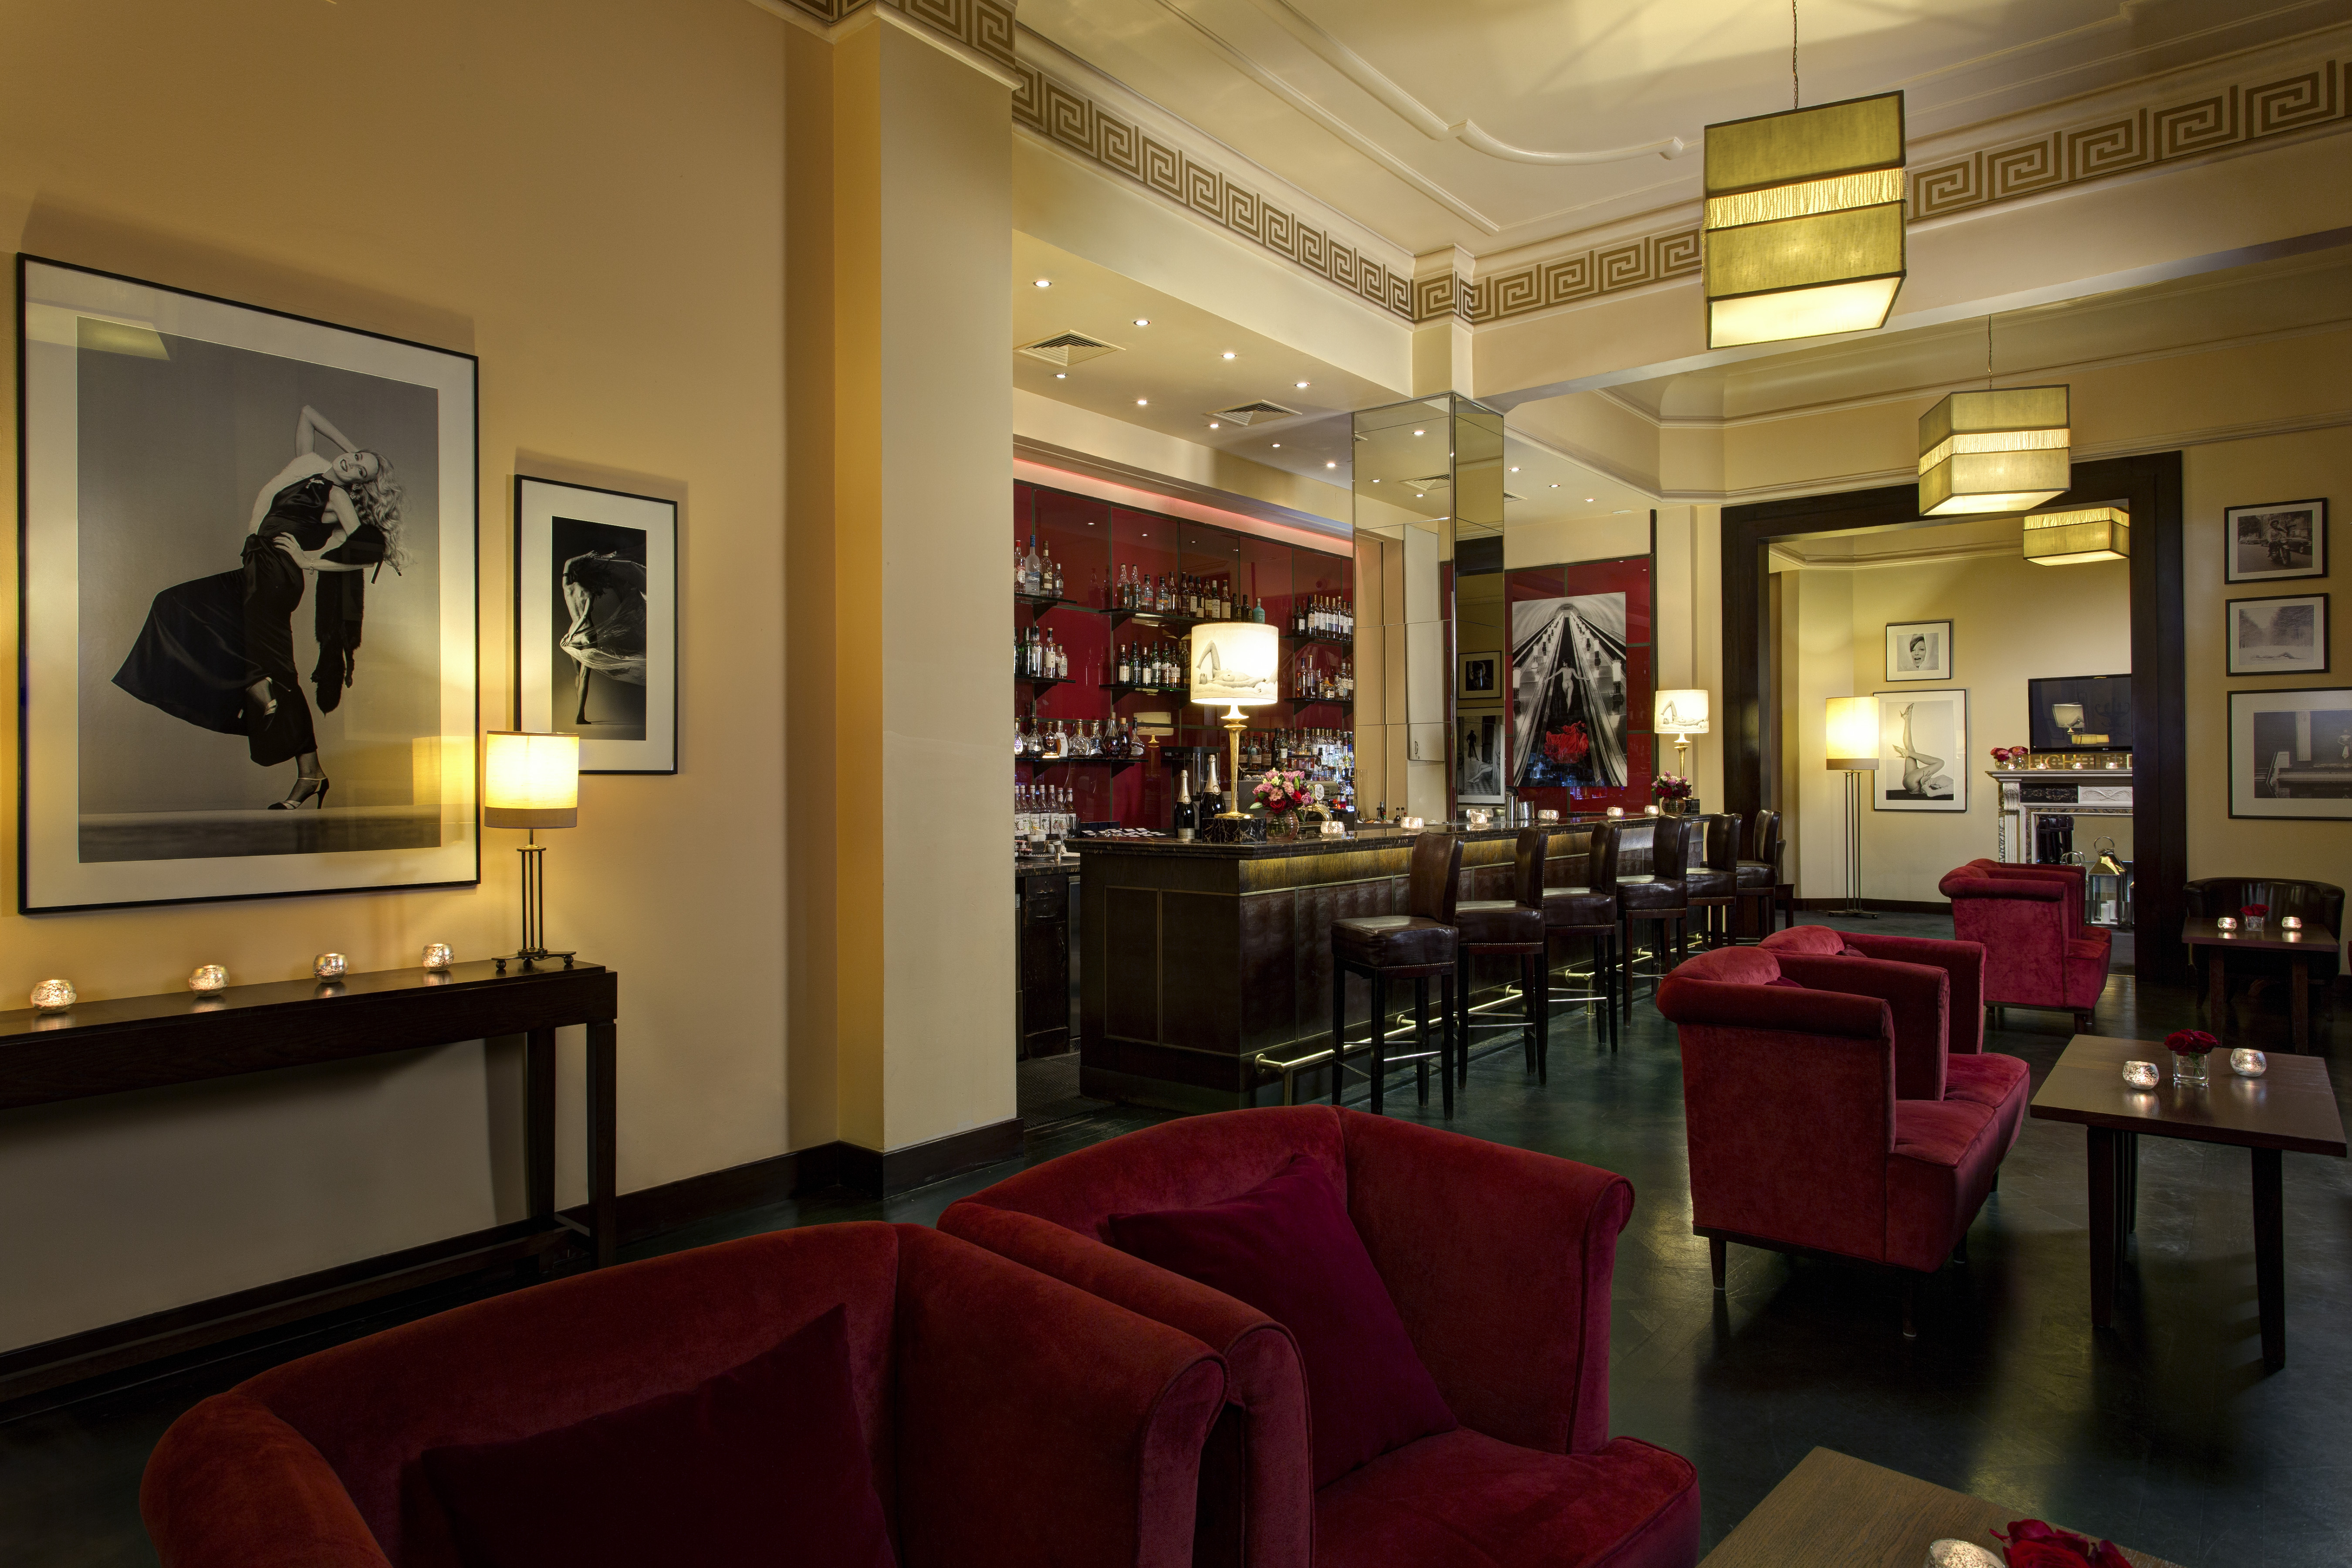 RFH Hotel Astoria - Astoria Cafe 7599